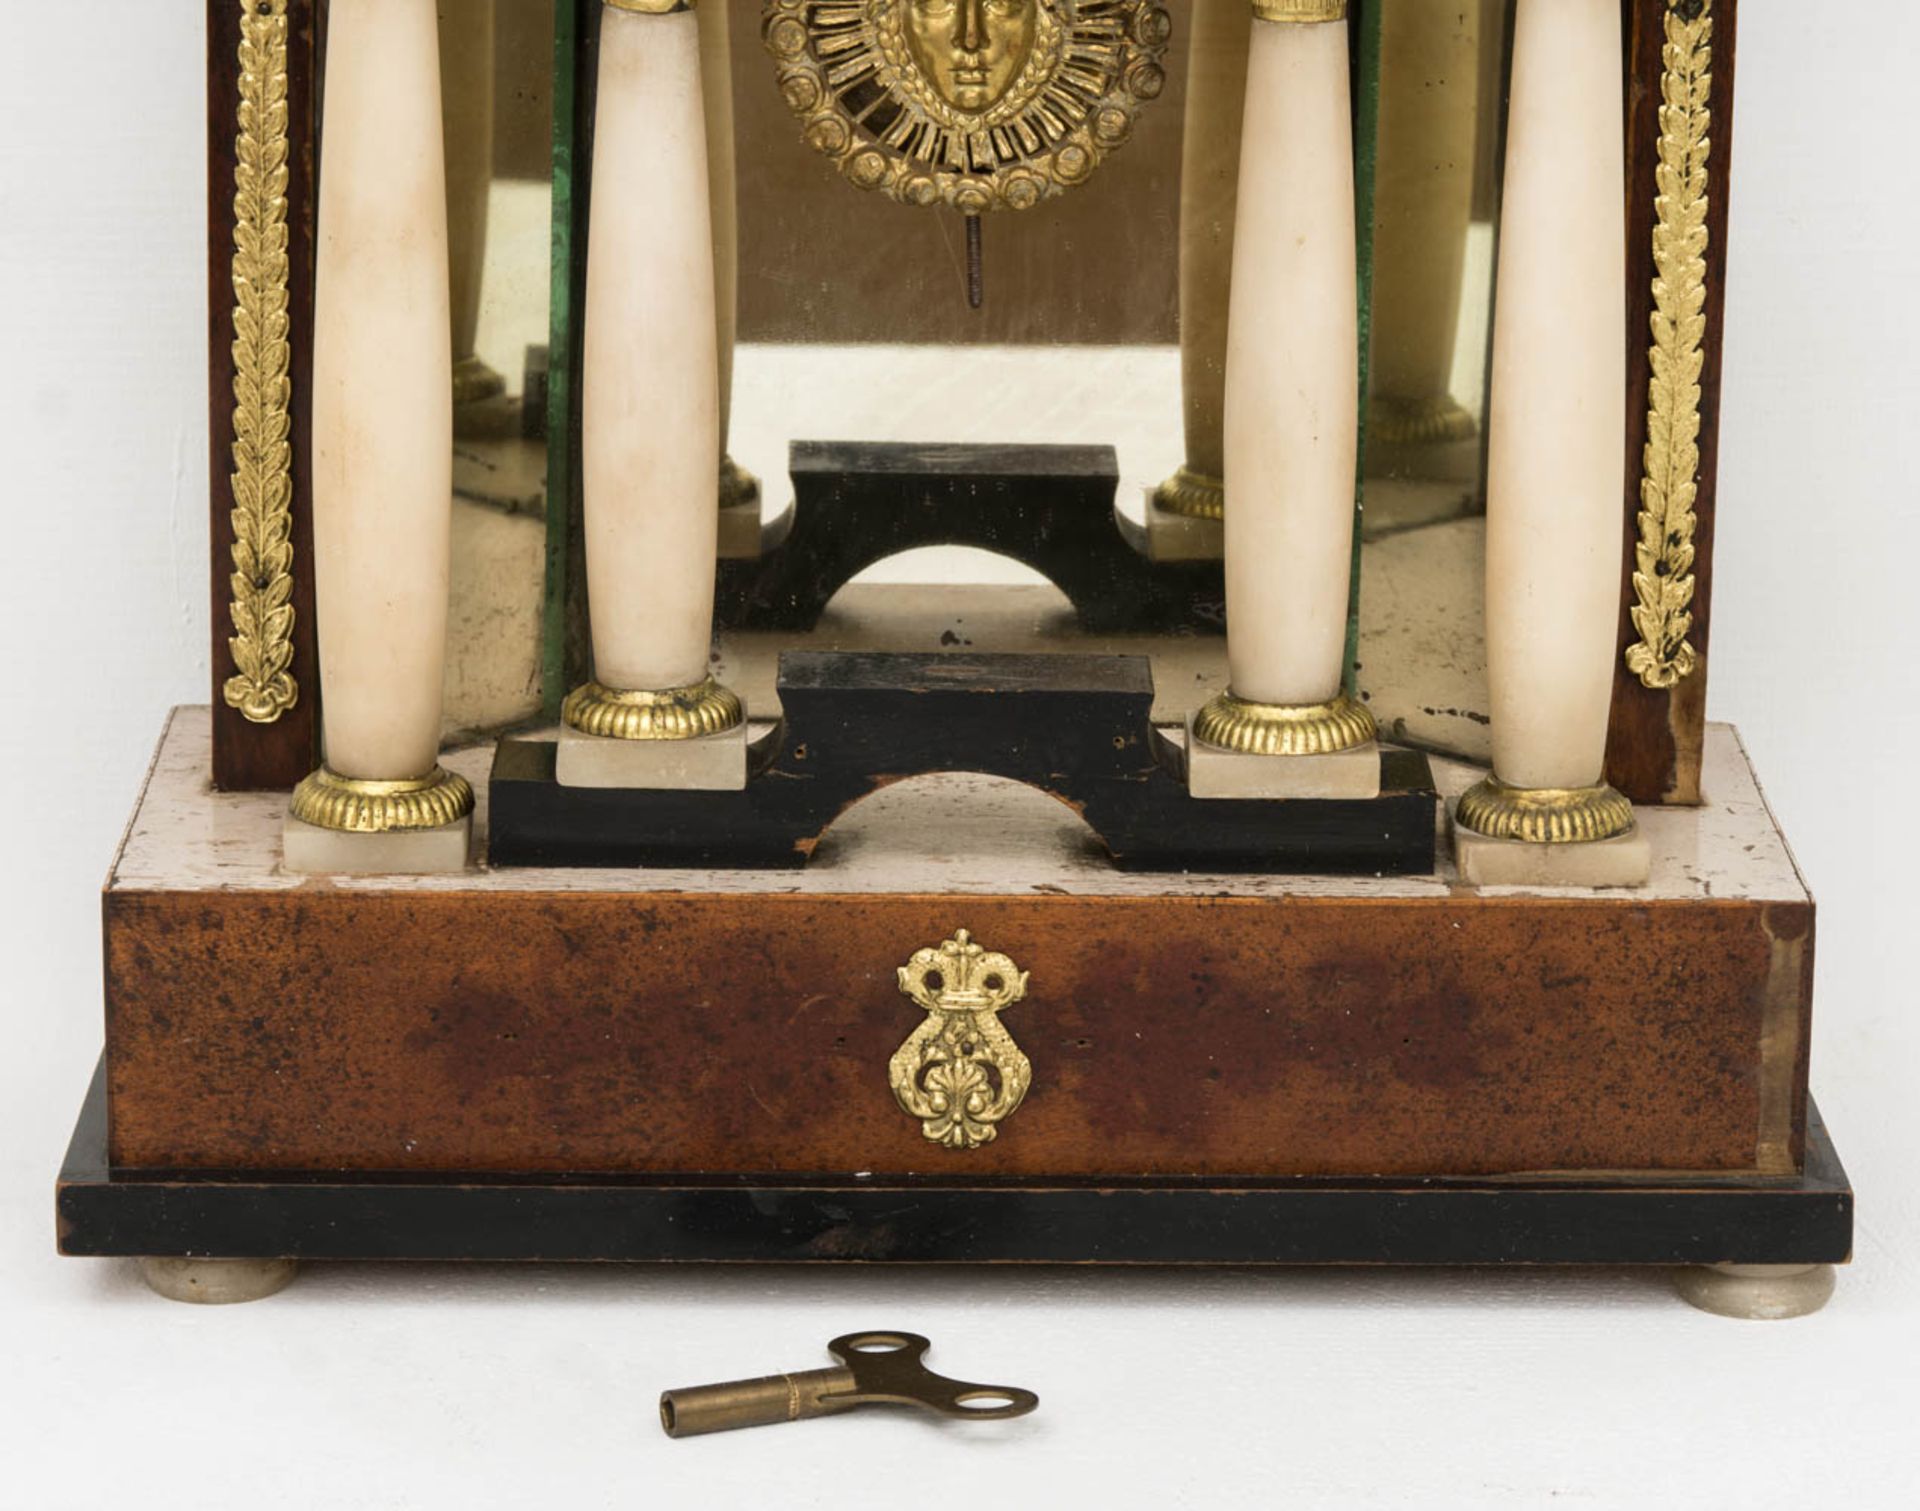 Klassizistische Kaminuhr, 19. Jh.Mit Pendel und Schlüssel, Beschläge teilweise besch - Bild 2 aus 11